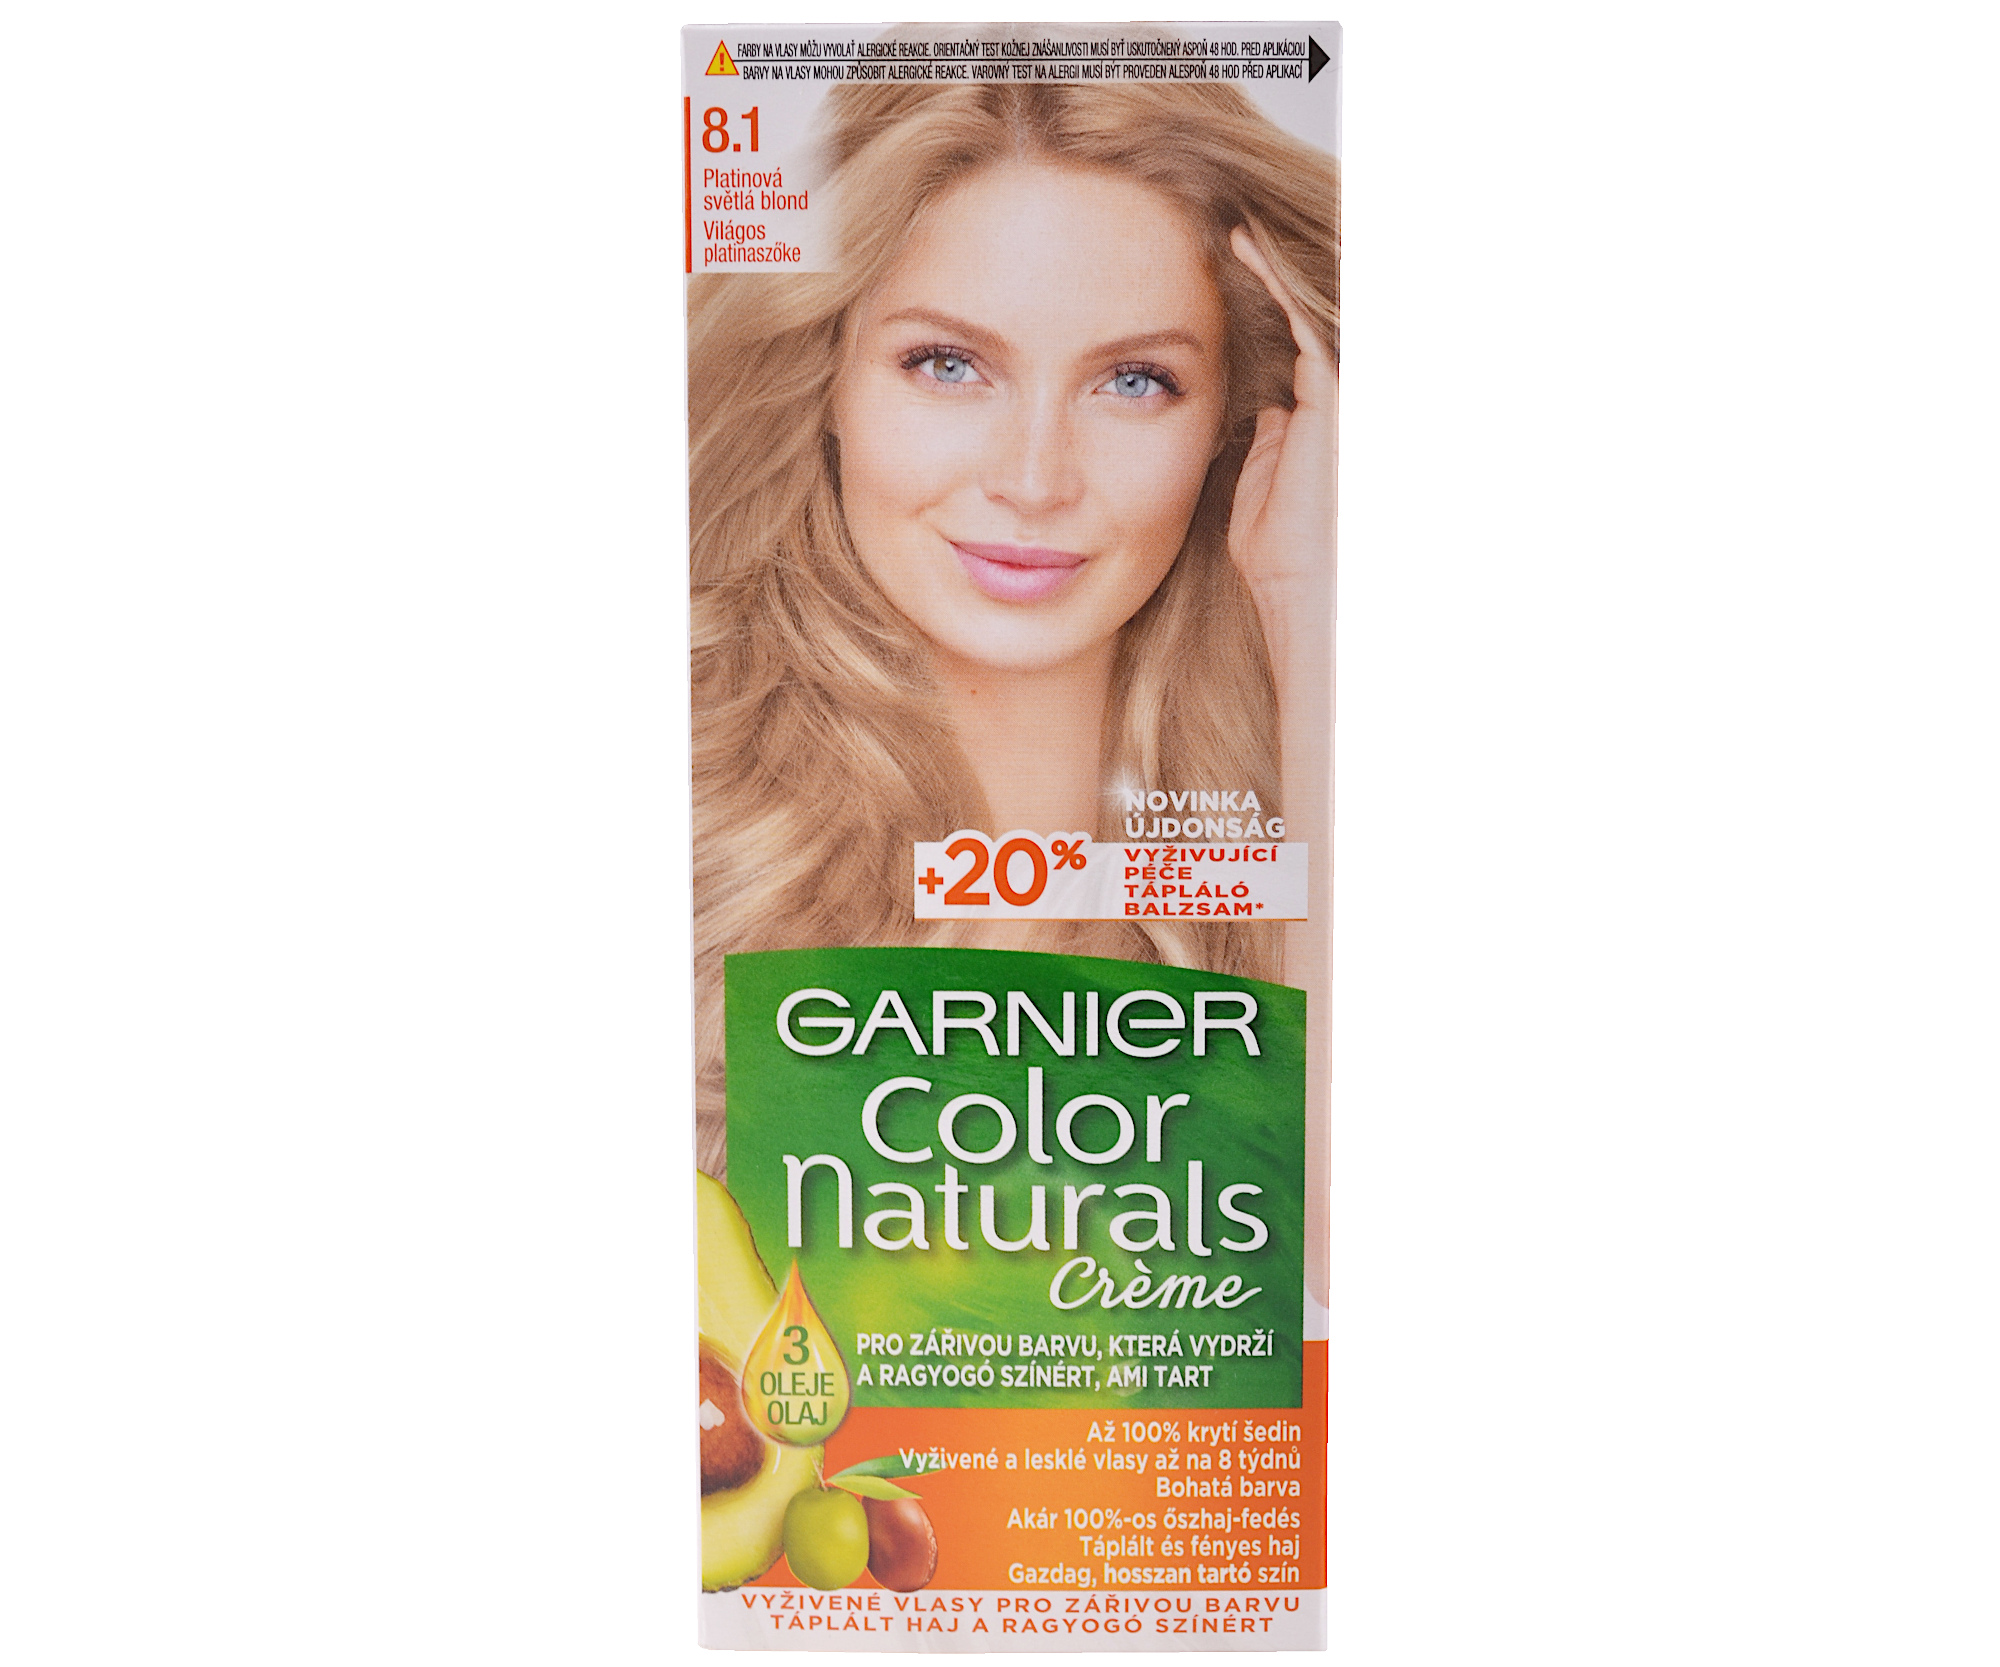 Permanentní barva Garnier Color Naturals 8.1 světlá blond popelavá + dárek zdarma